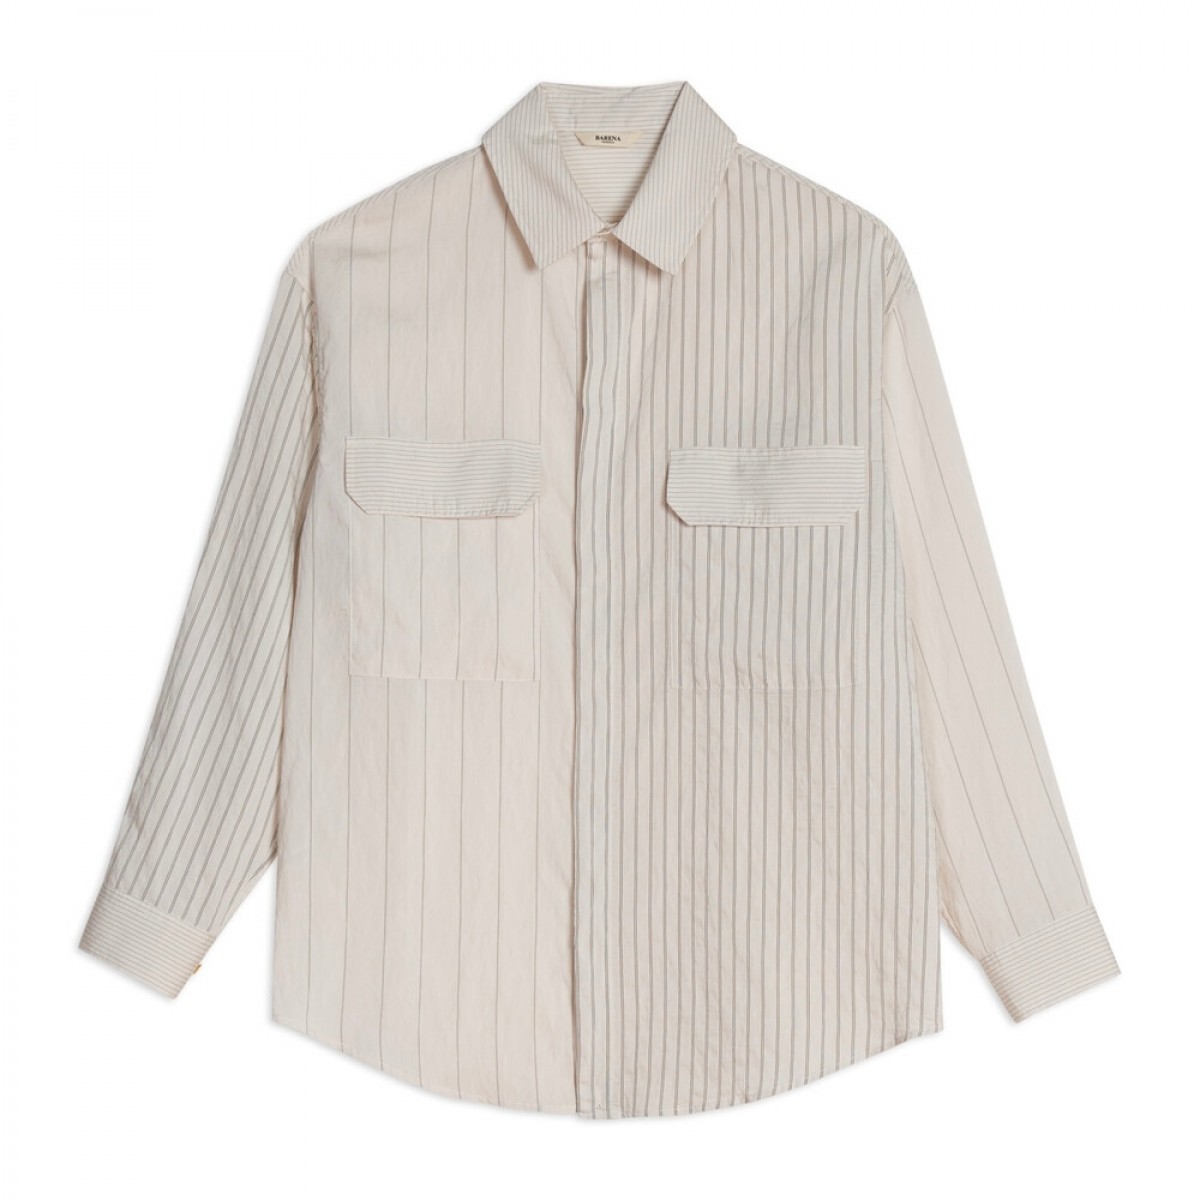 shirt graziella filoro - off white - front